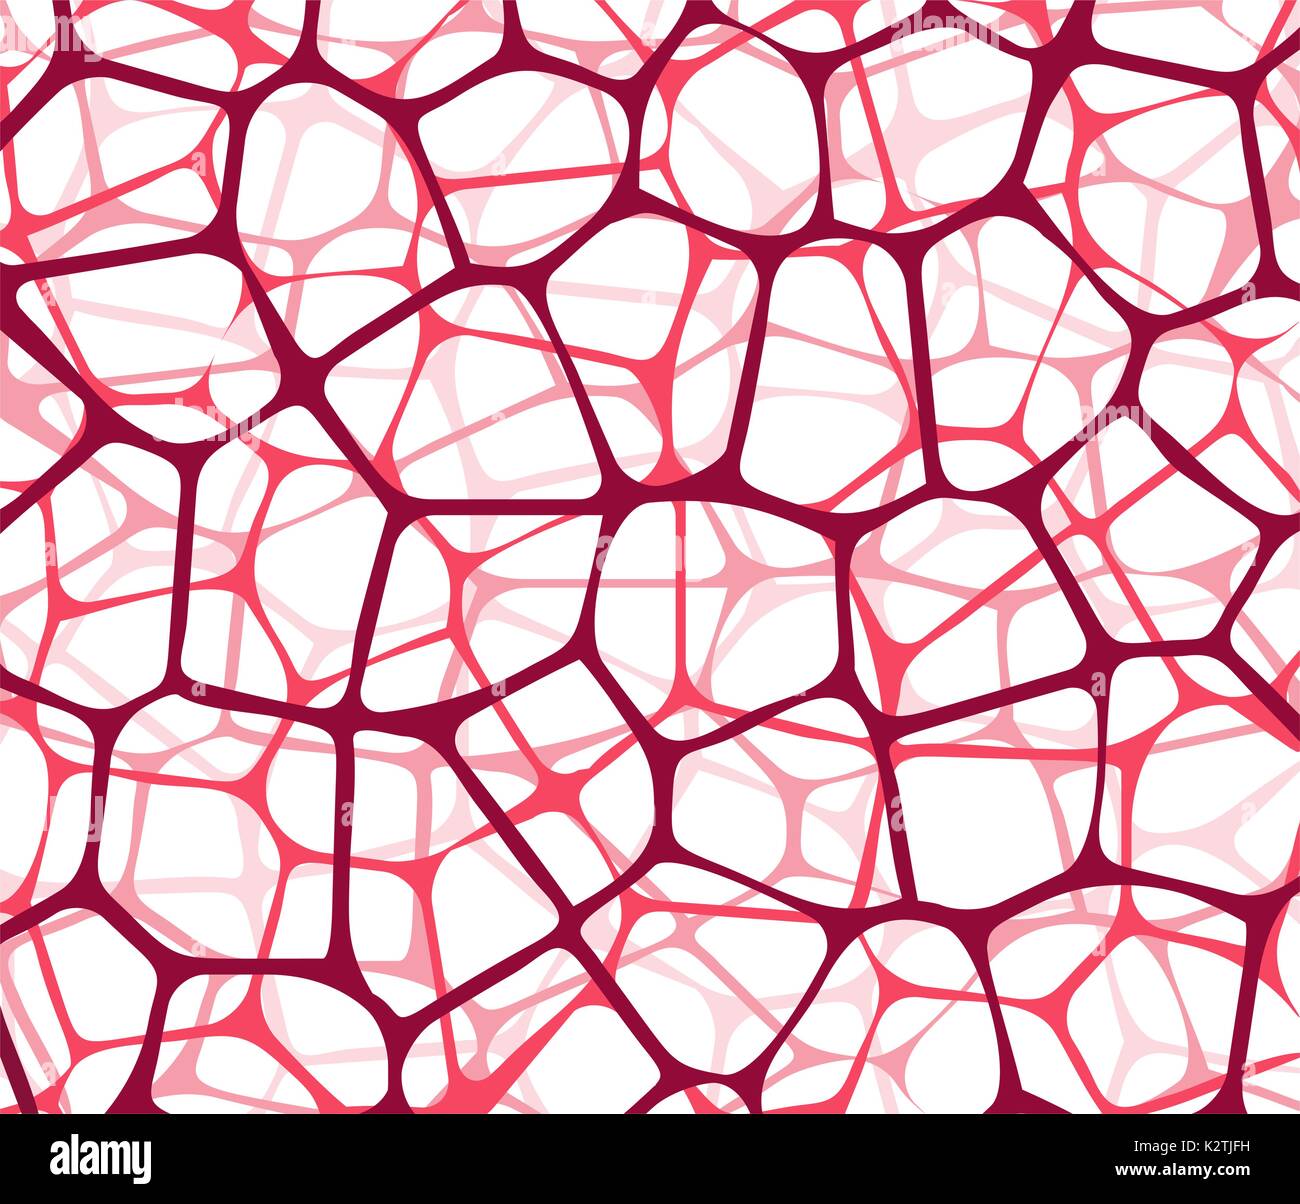 Zusammenfassung Hintergrund mit roten Netze Stock Vektor